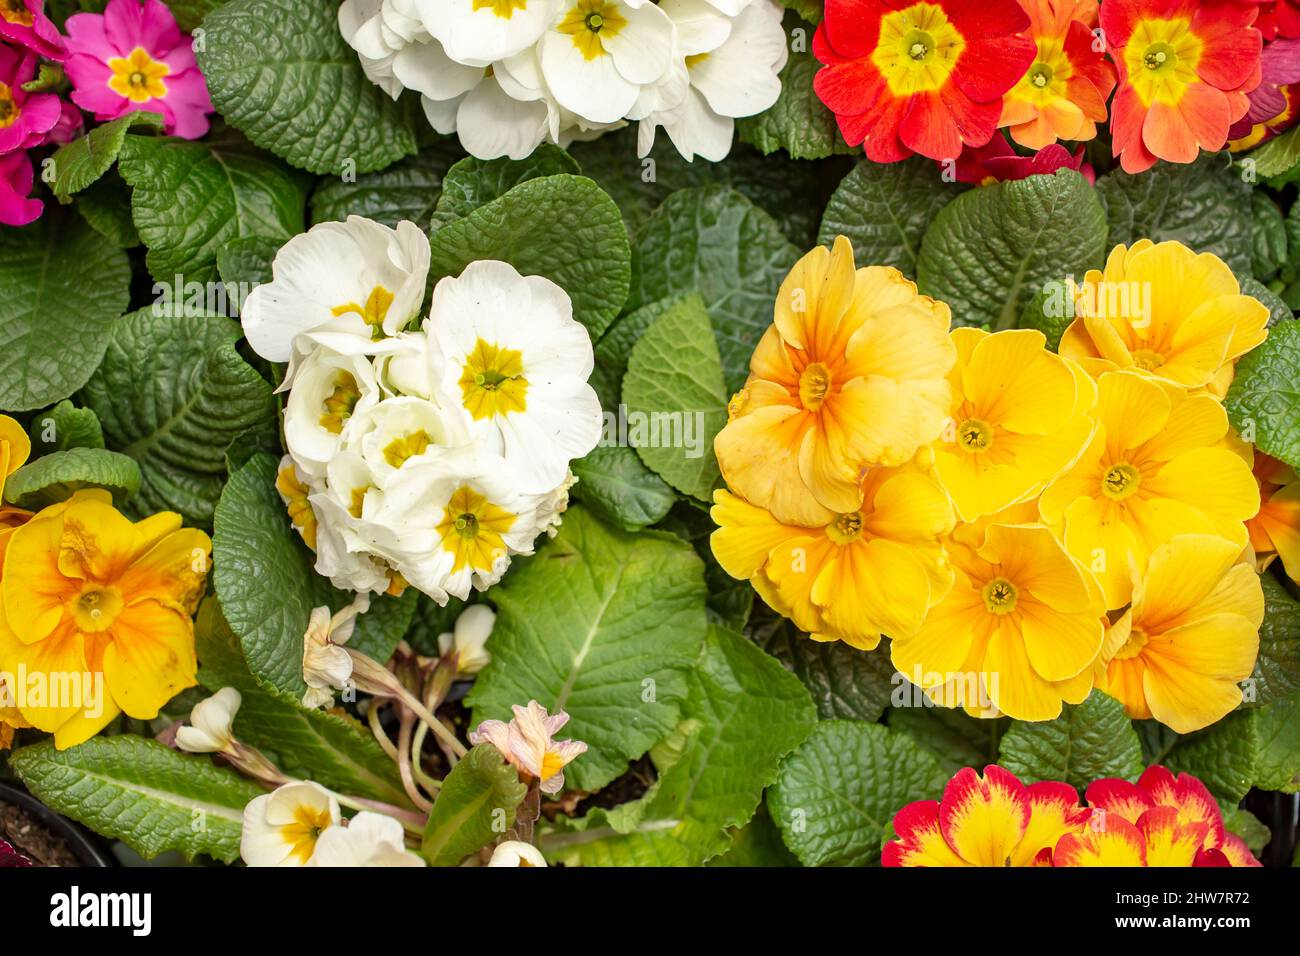 rosso bianco e giallo promose fiori, vista dall'alto Foto Stock